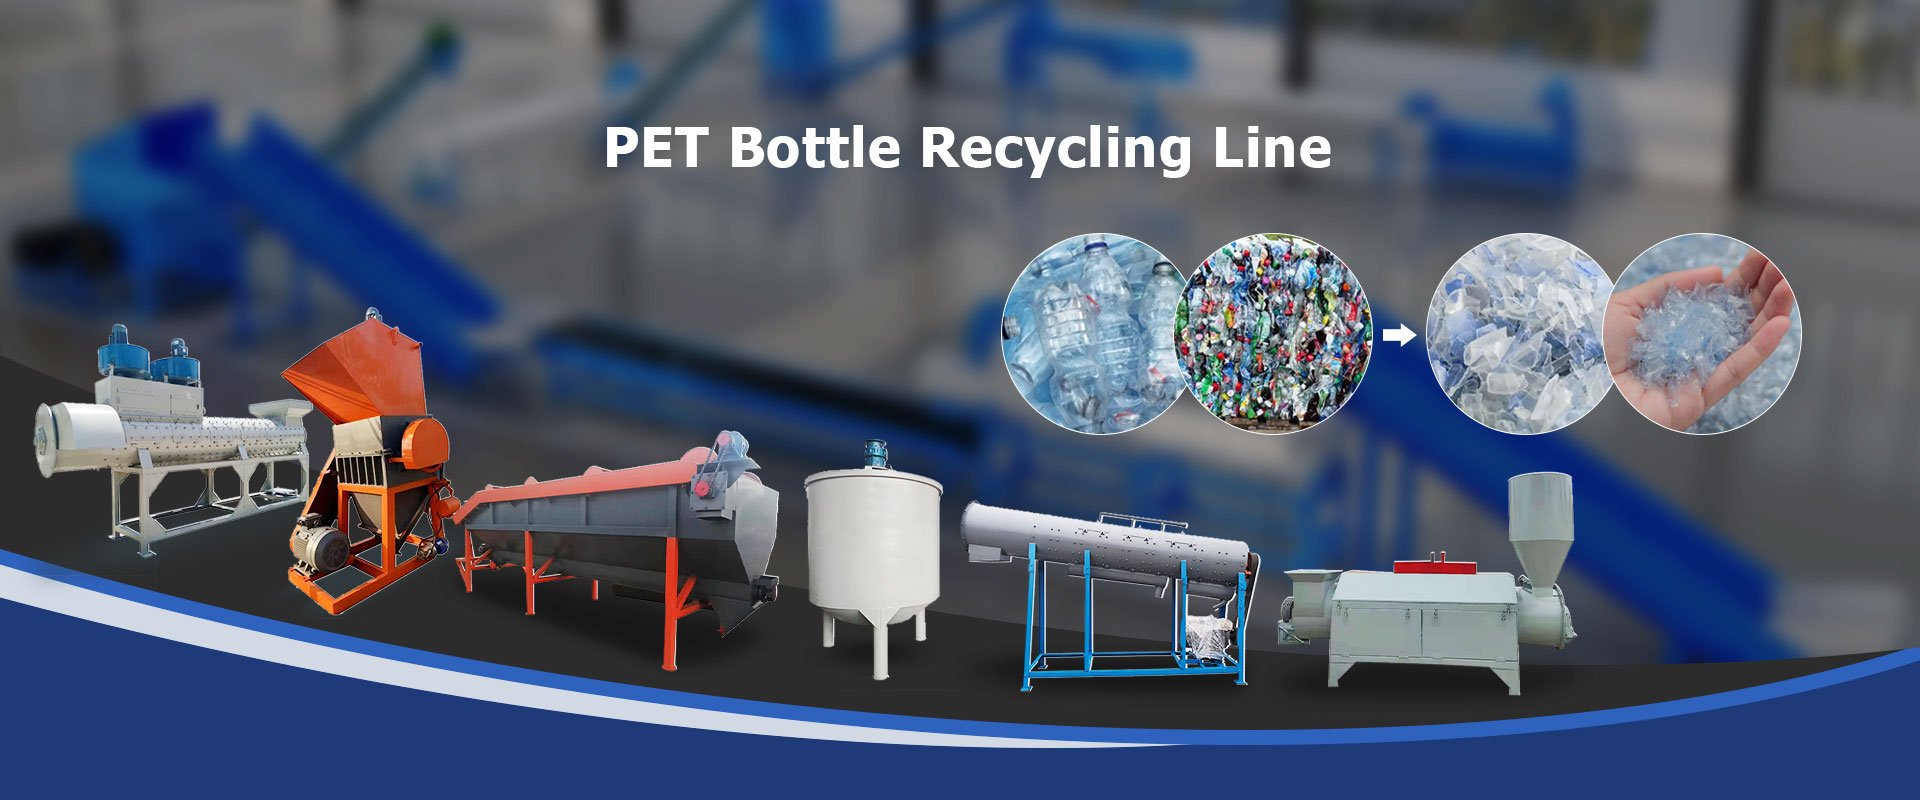 Ligne de recyclage de bouteilles PET